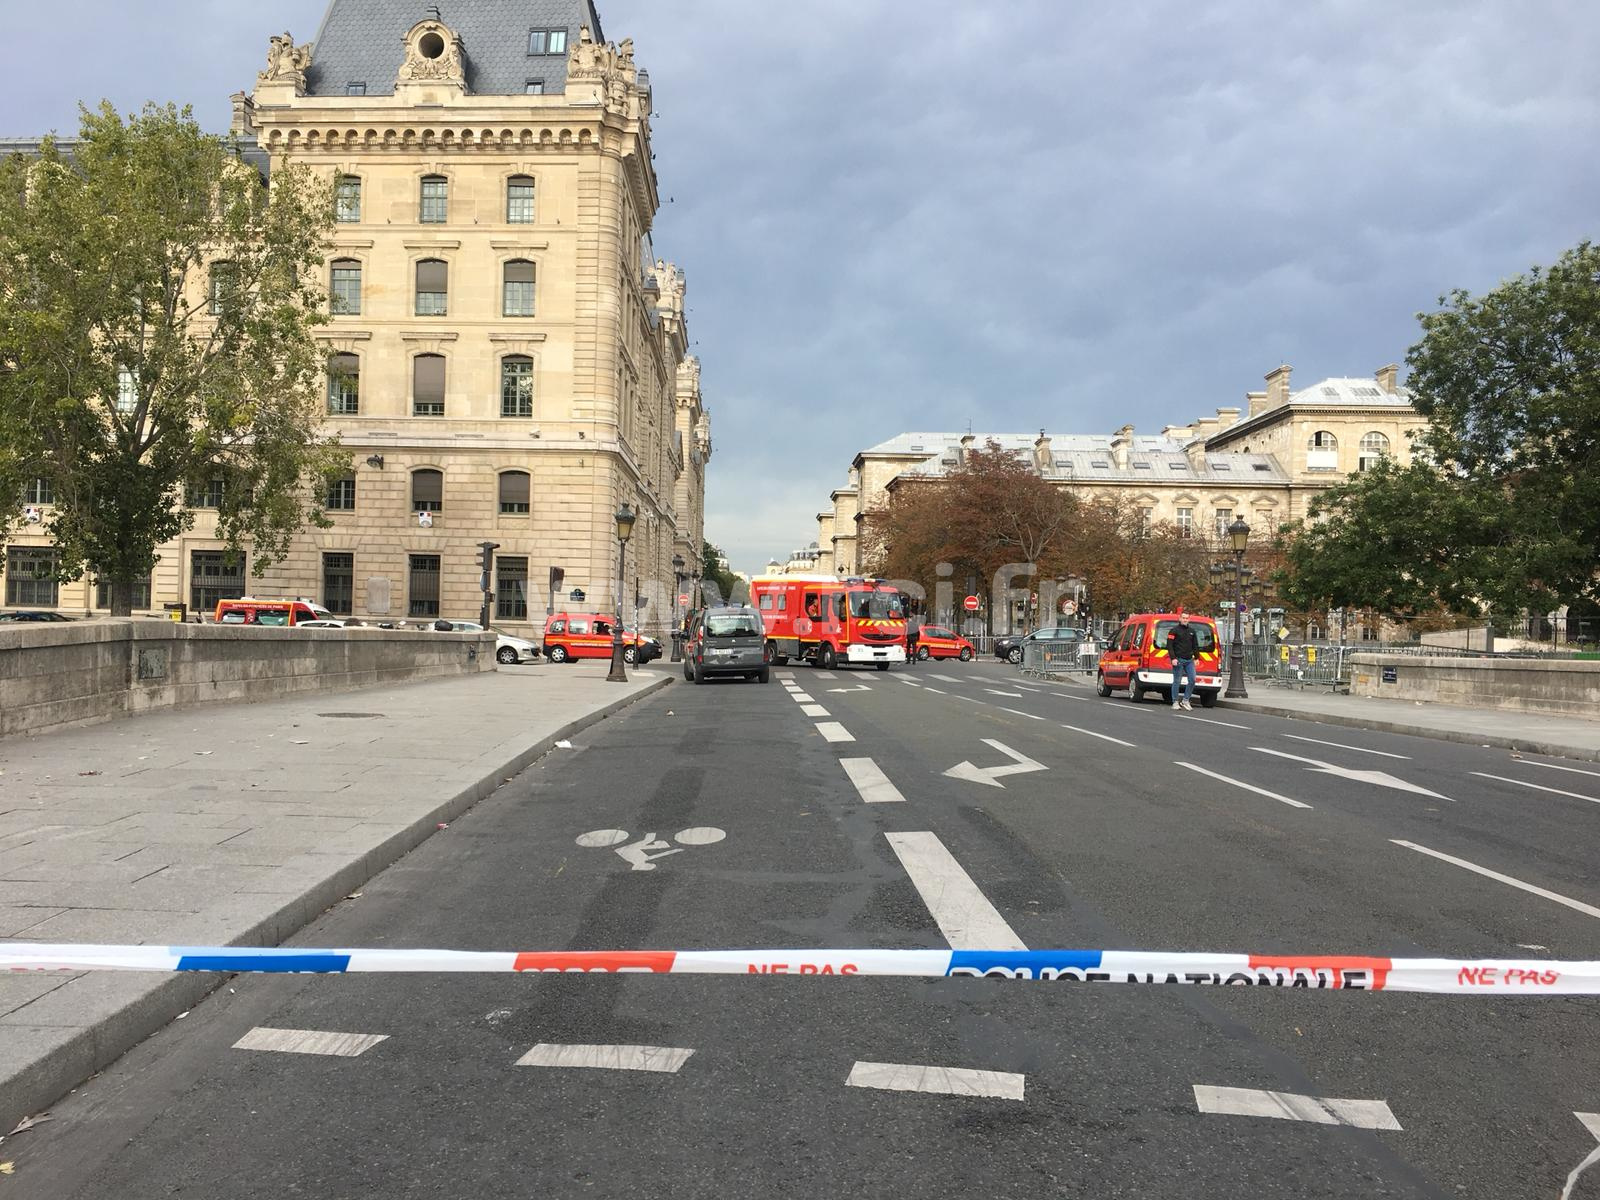     Vive émotion à la préfecture de police de Paris suite à la tuerie du 3 octobre 2019

